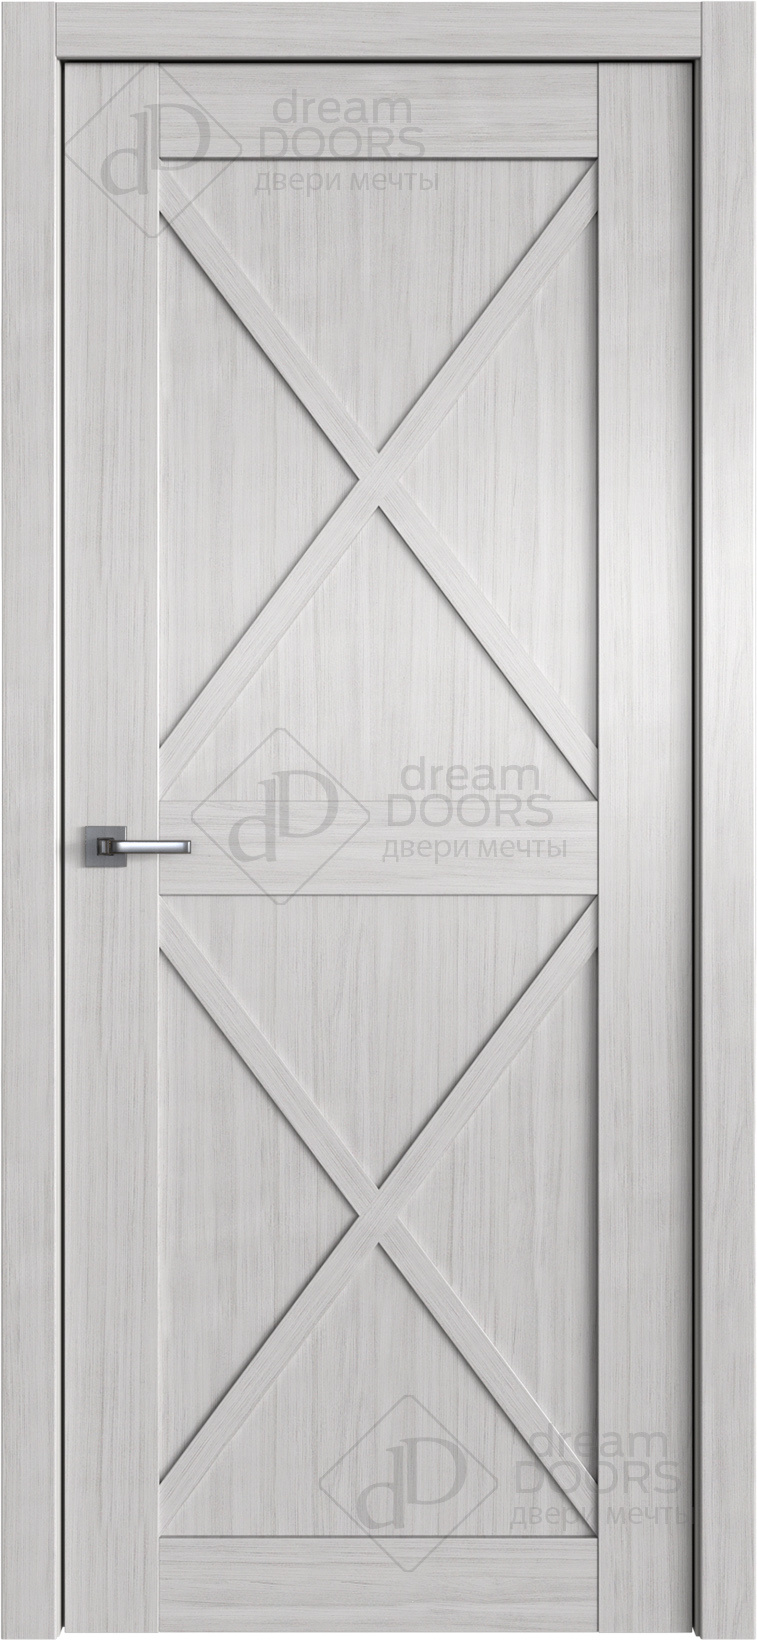 Dream Doors Межкомнатная дверь W36, арт. 20096 - фото №1